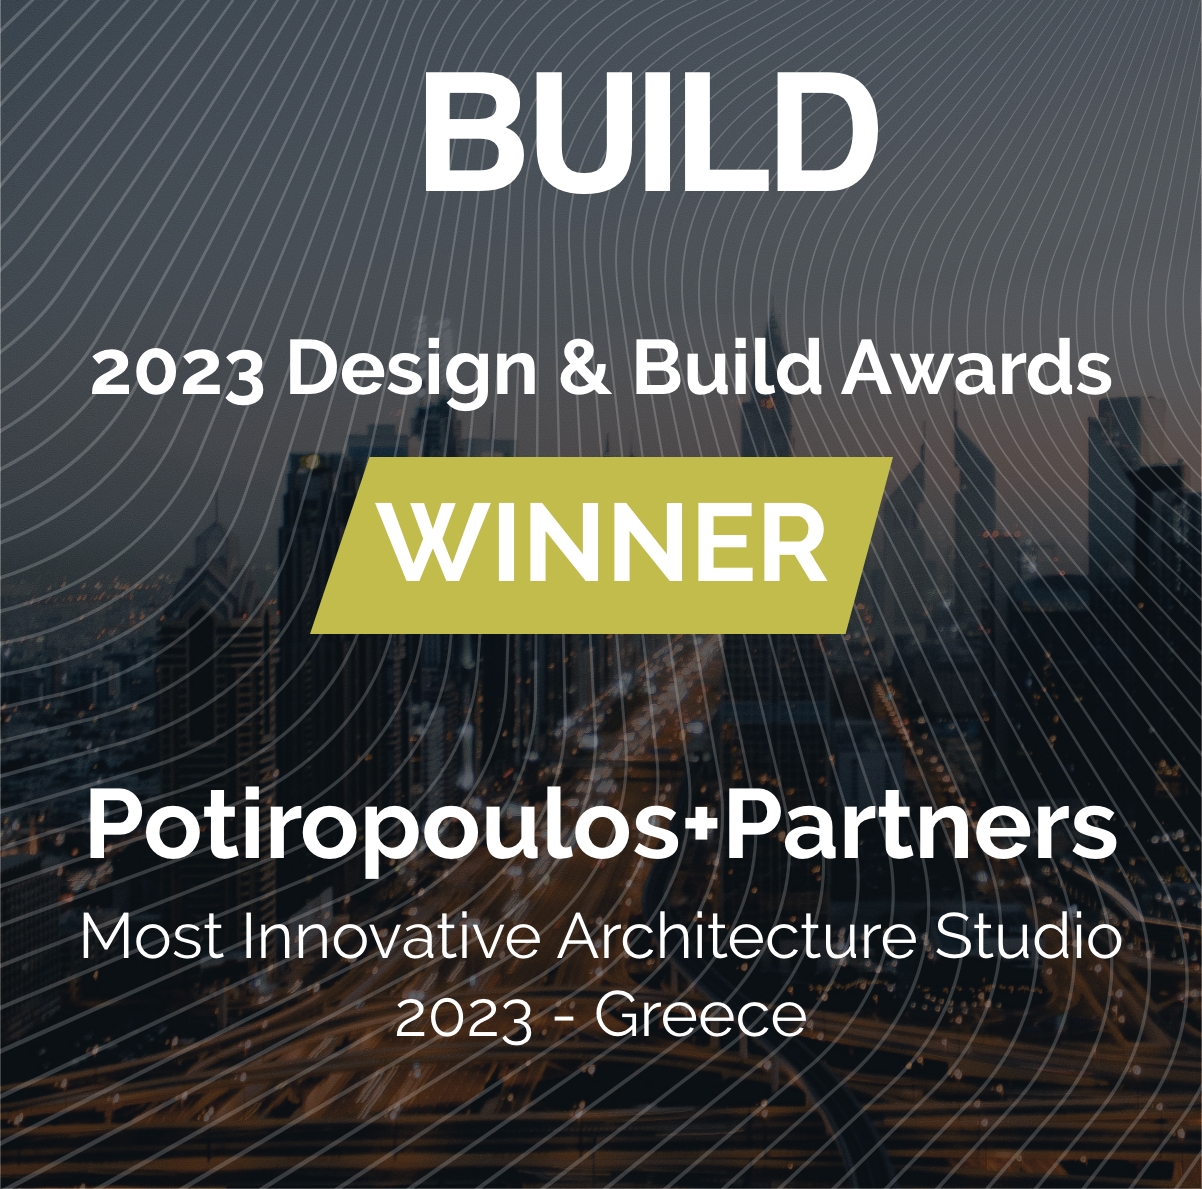 Τον τίτλο του πιο καινοτόμου αρχιτεκτονικού γραφείου στην Ελλάδα κατάκτησε η Potiropoulos+Partners στο πλαίσιο των 2023 Design & Build Awards